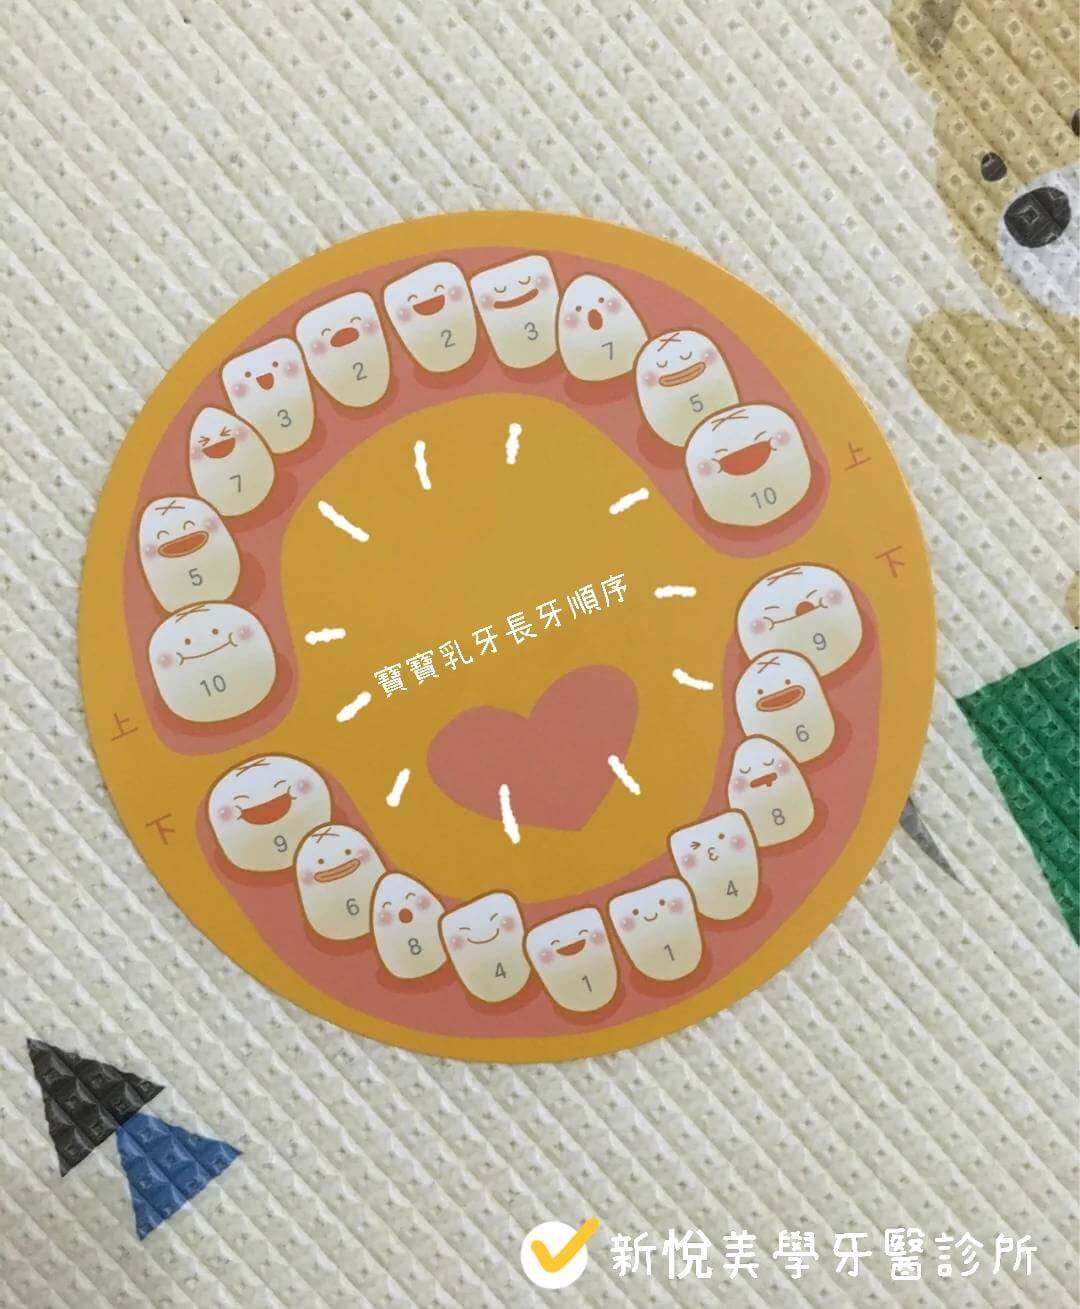 新悅美學牙醫診所的衛教專區圖片